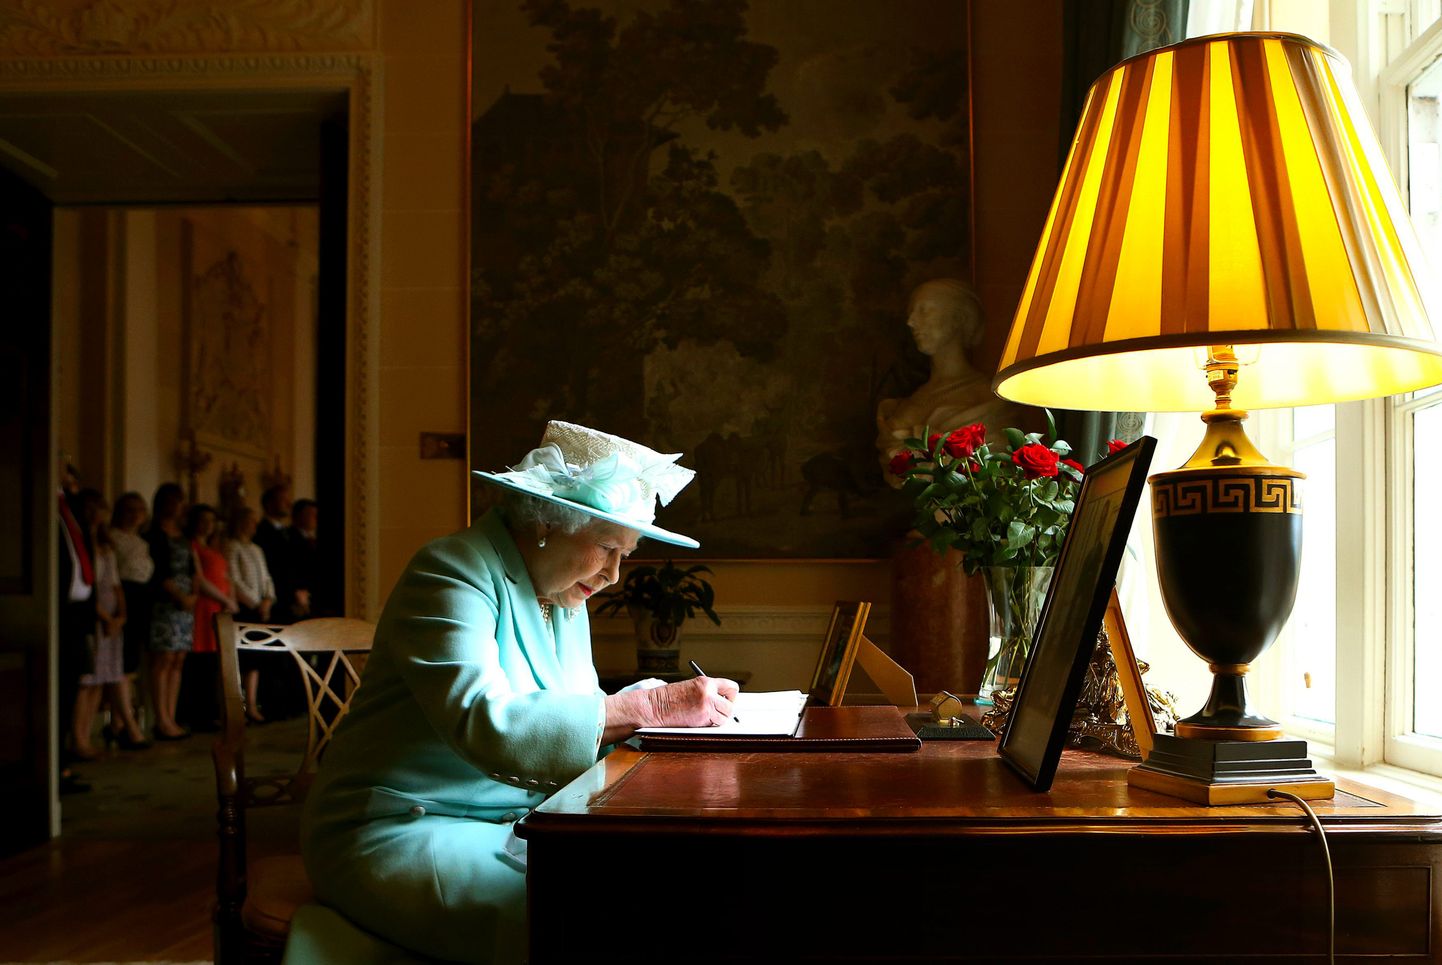 Kuninganna aastal 2014 allkirjastamas külalisteraamatut Põhja-Iirimaal